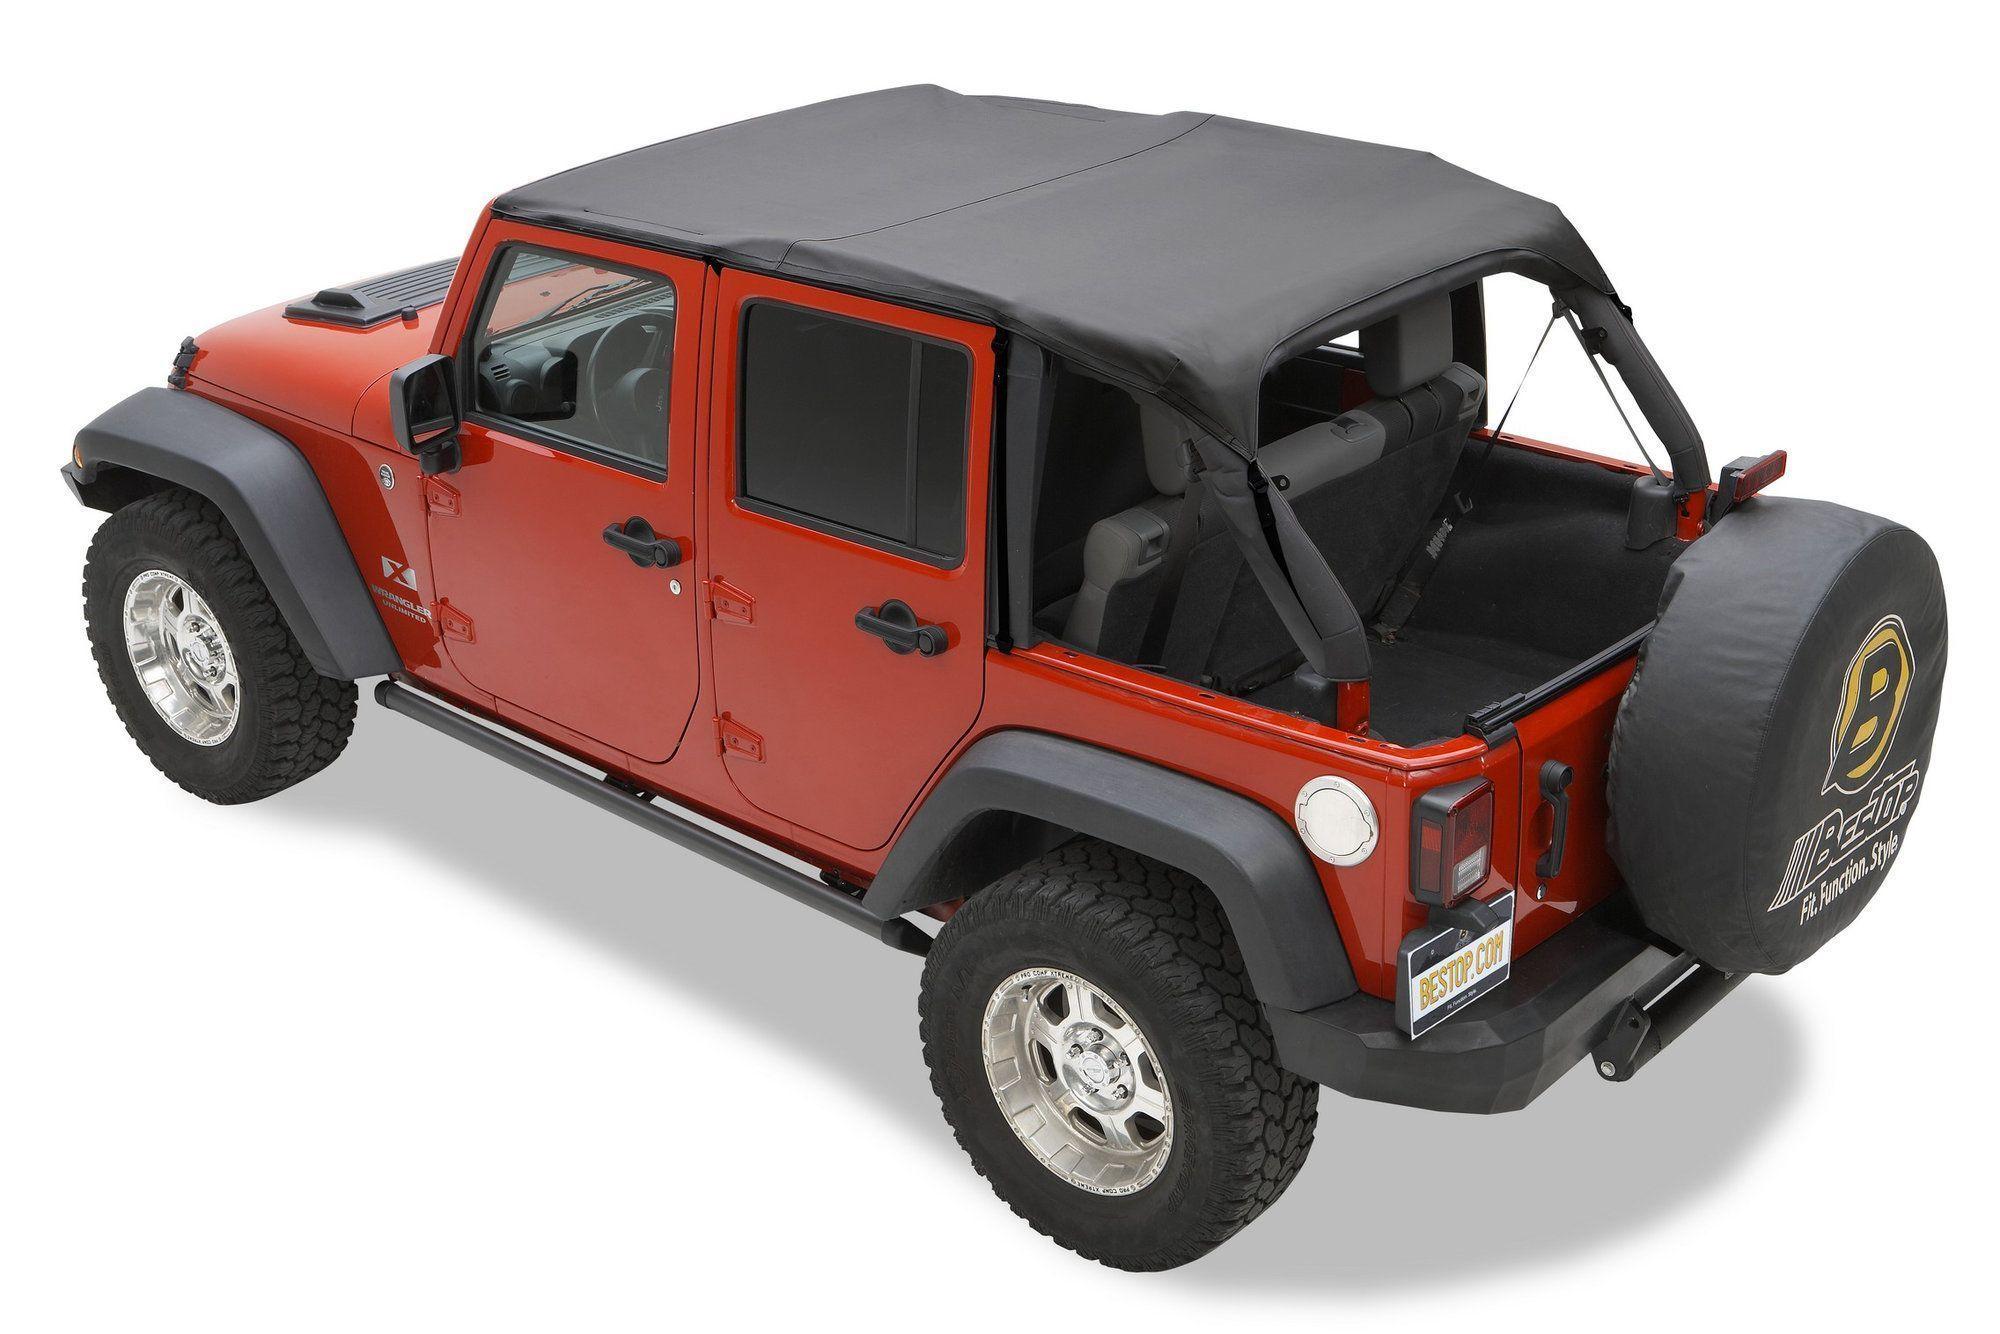 Engineer reccomend Bikini jeep safari style top